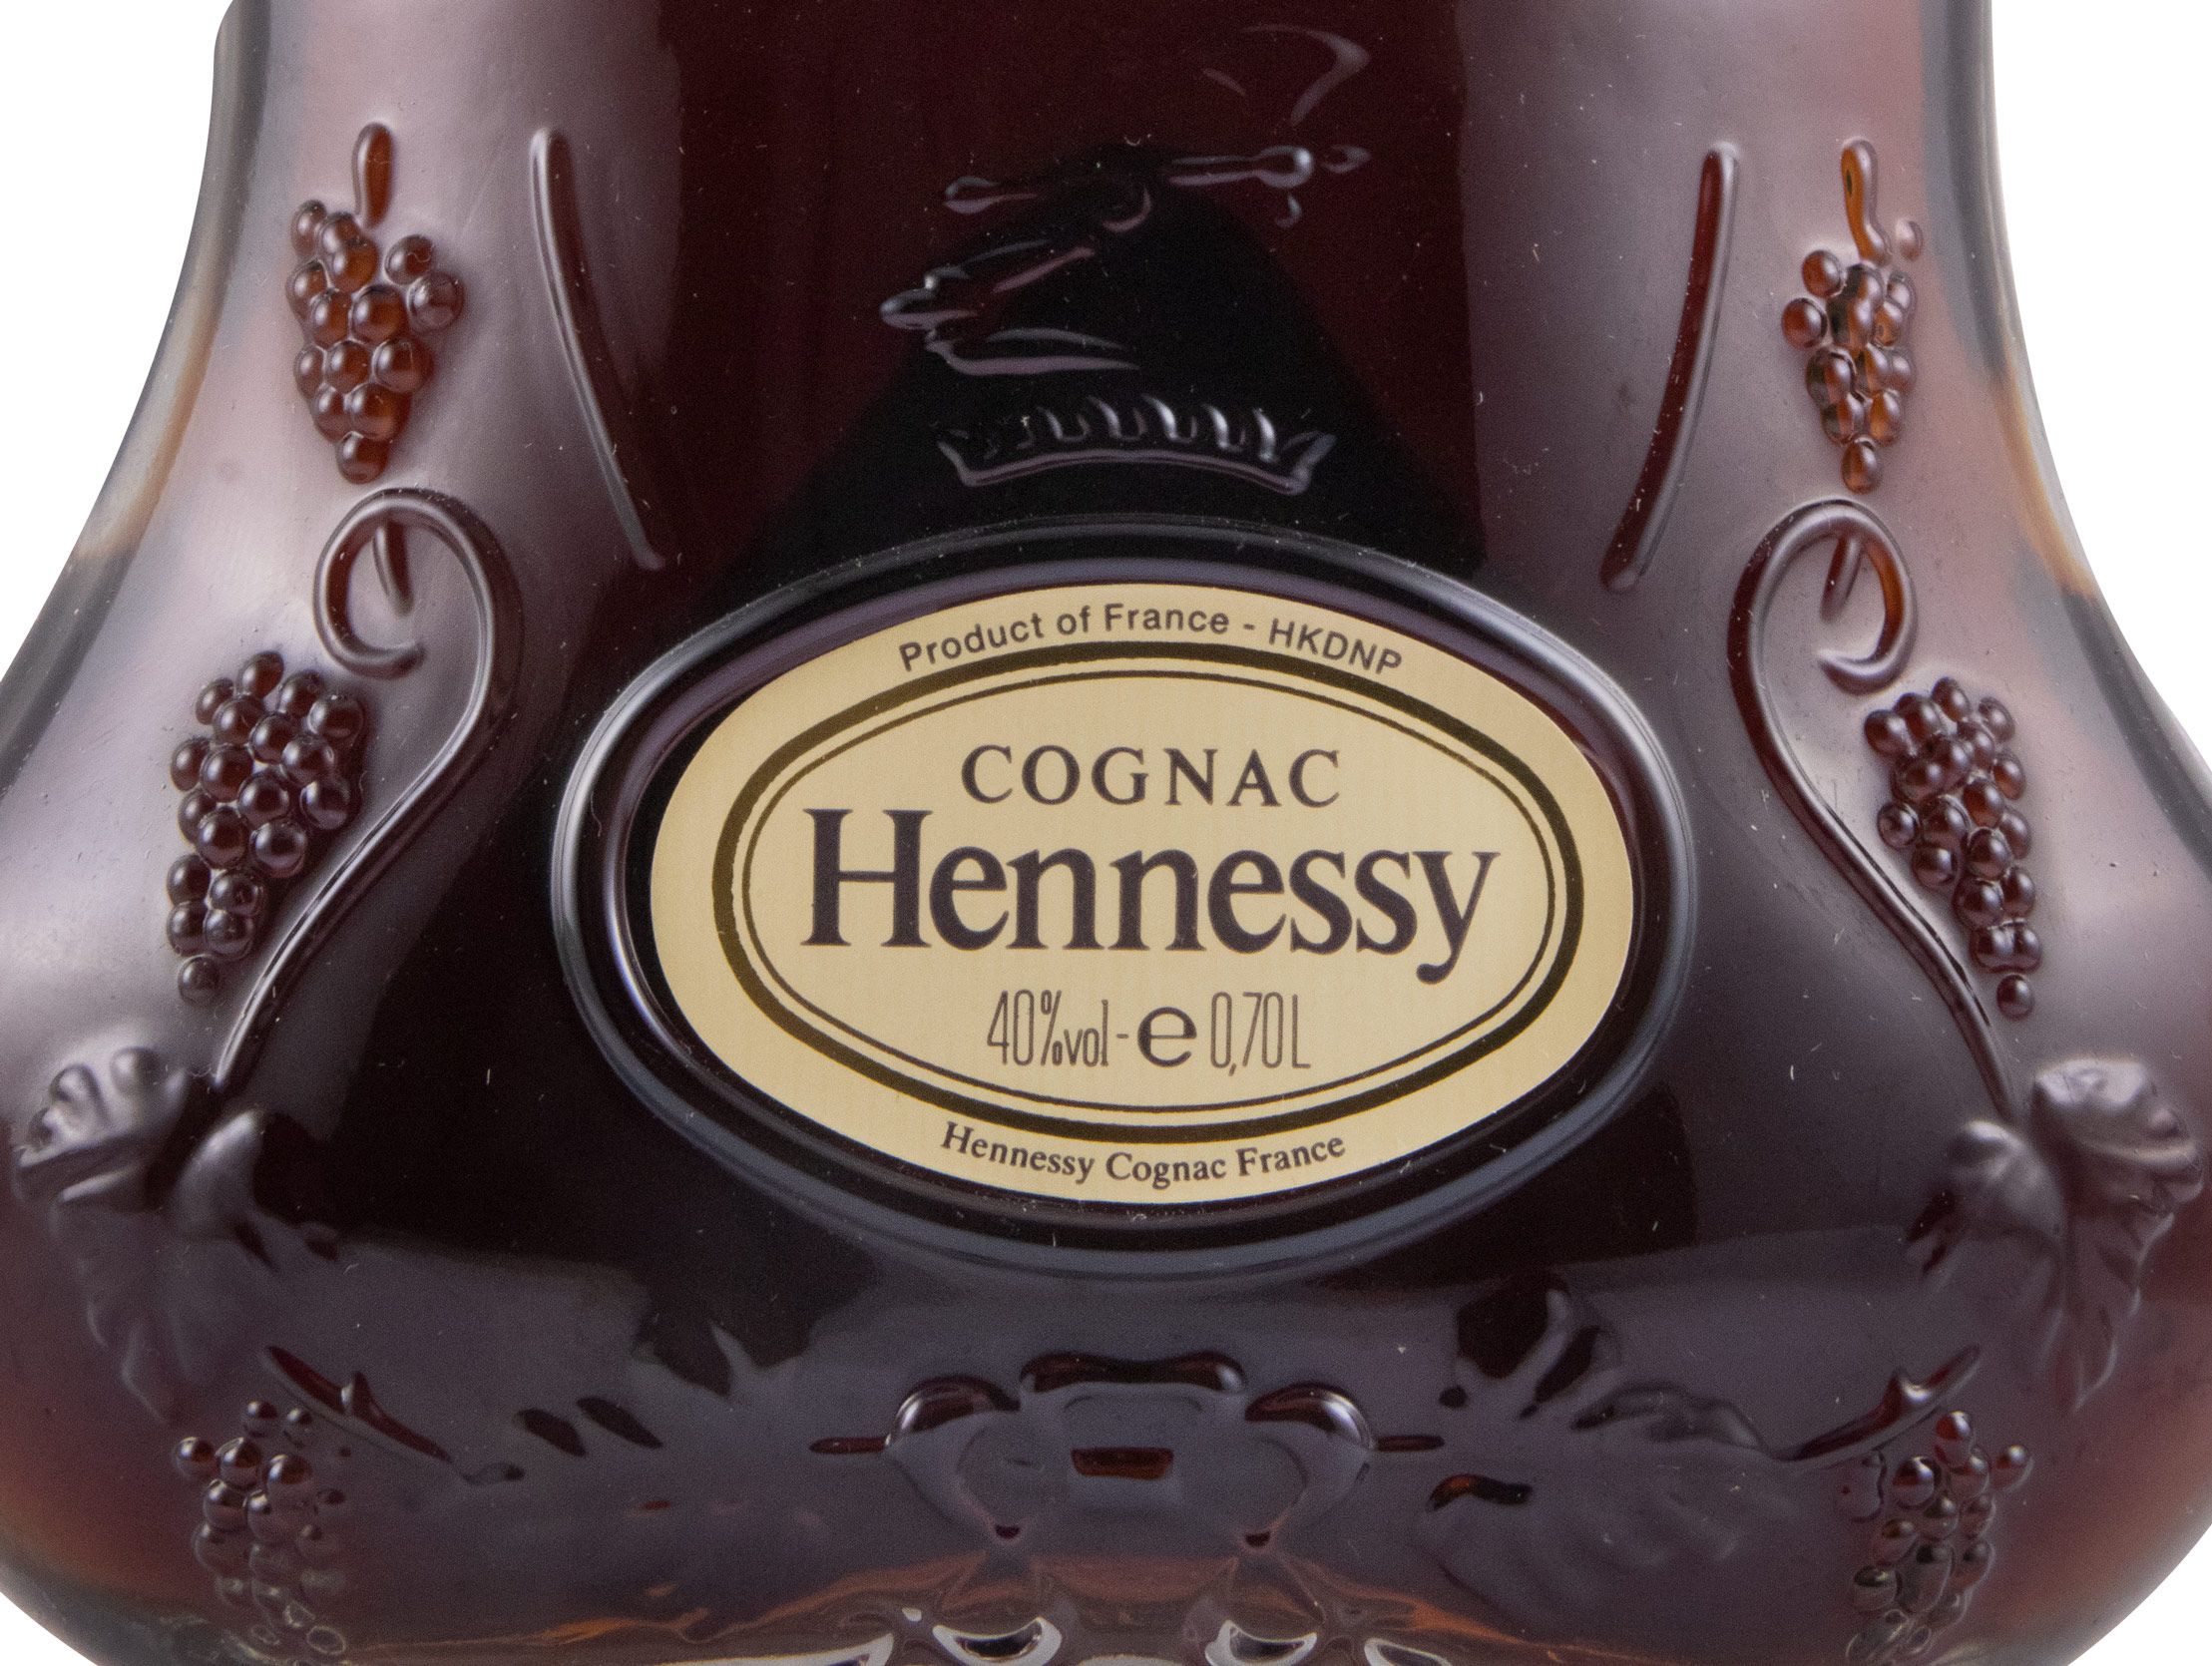 Cognac Hennessy XO (garrafa antiga)